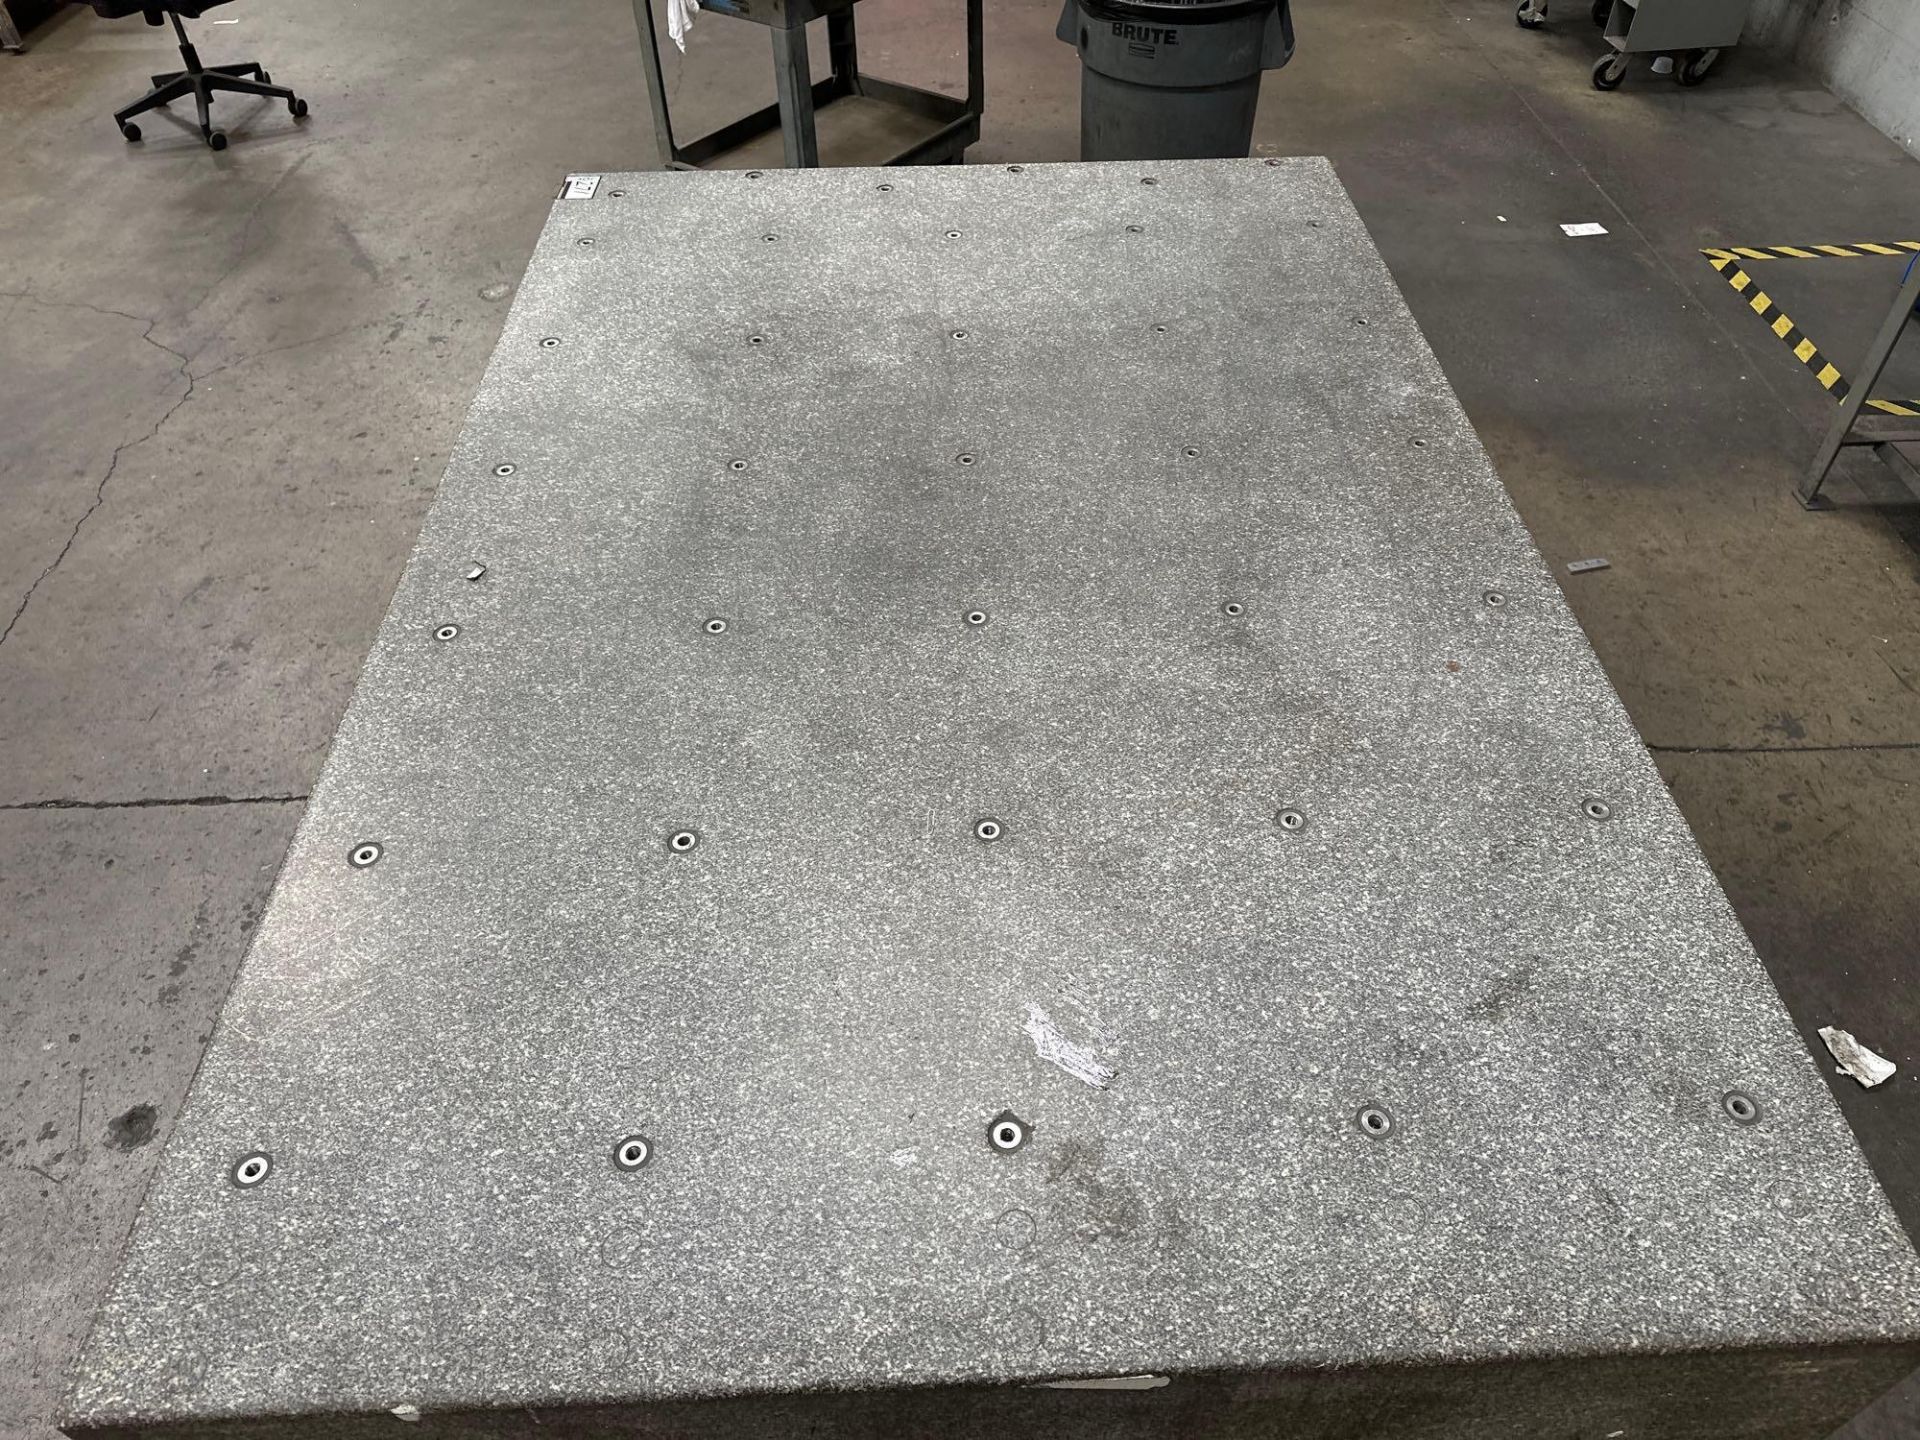 18” x 59” x 90” Granite Surface Plate w/ Steel Stand - Bild 6 aus 6